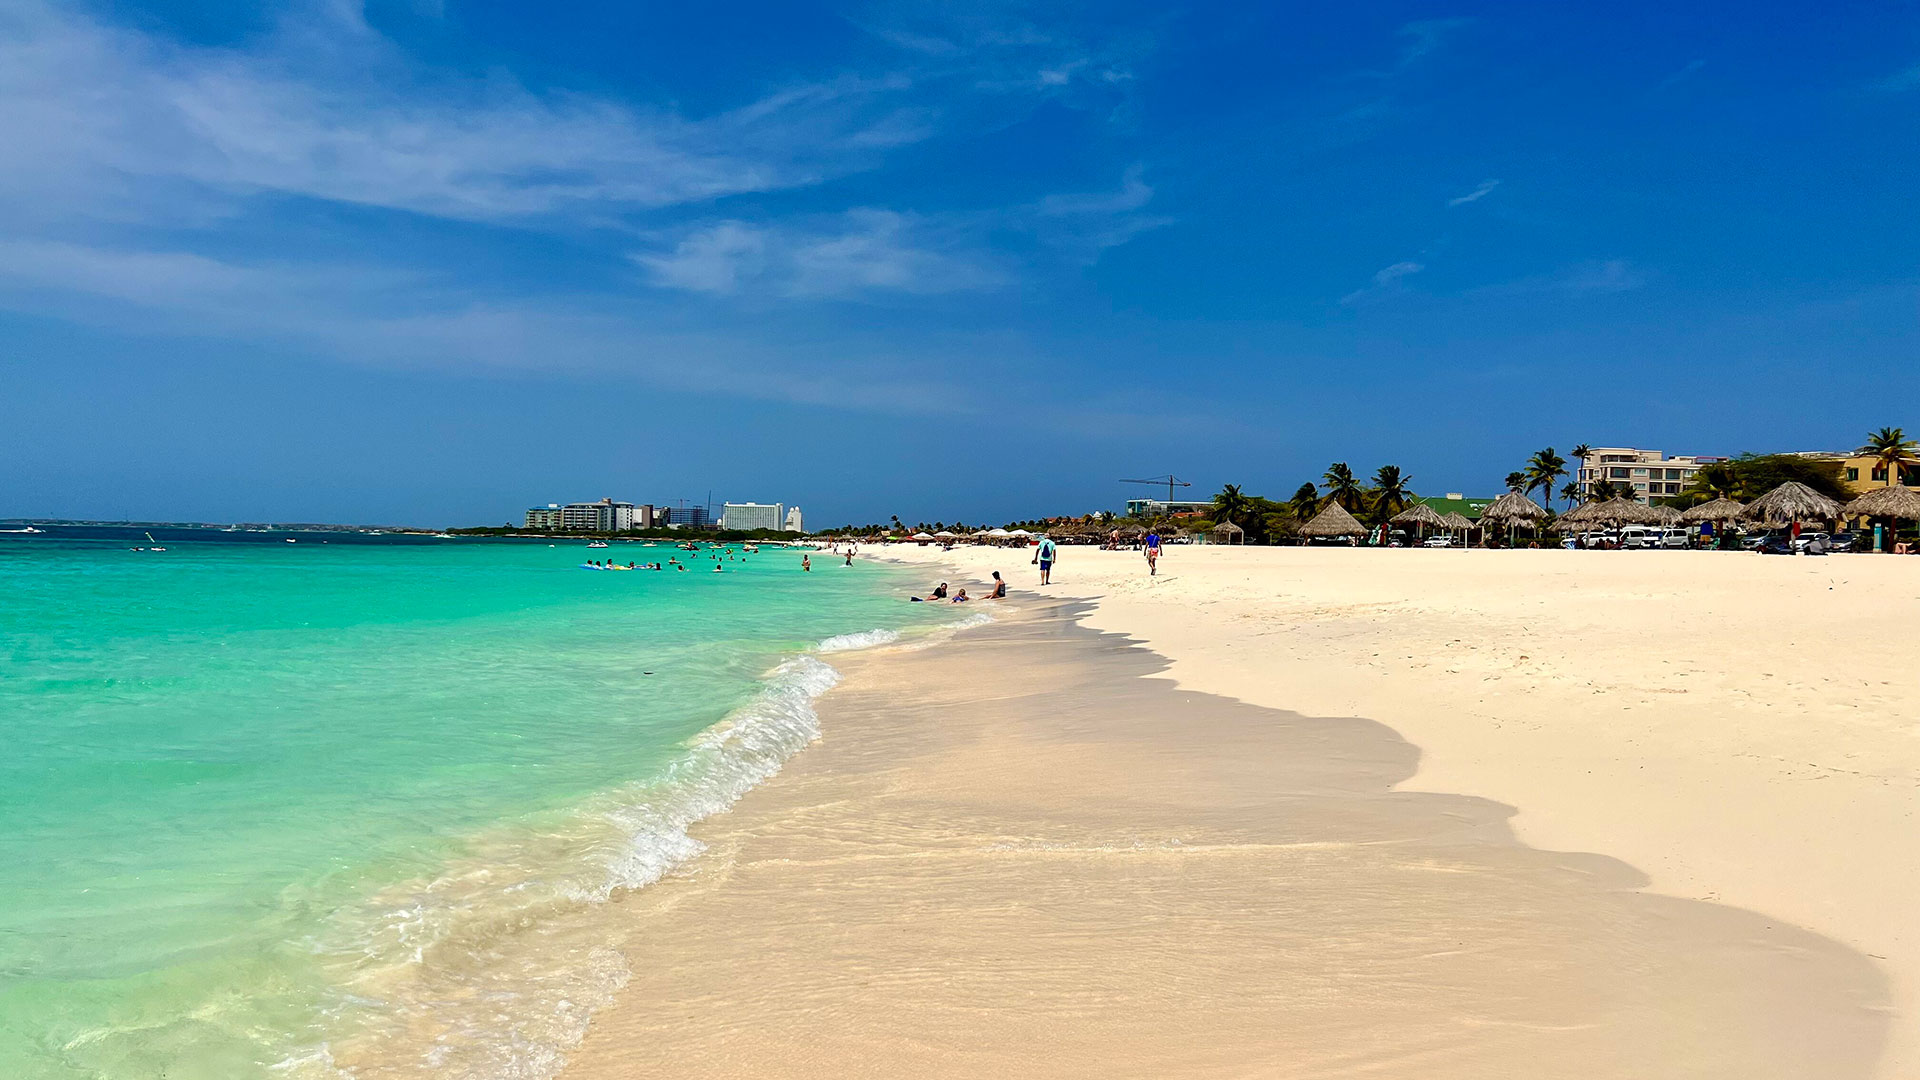 Playa Eagle Beach. La temperatura promedio en la isla durante todo el año es de 28 grados, está fuera del cinturón de huracanes que cada año azota al Caribe y tiene arenas blancas y agua cristalina